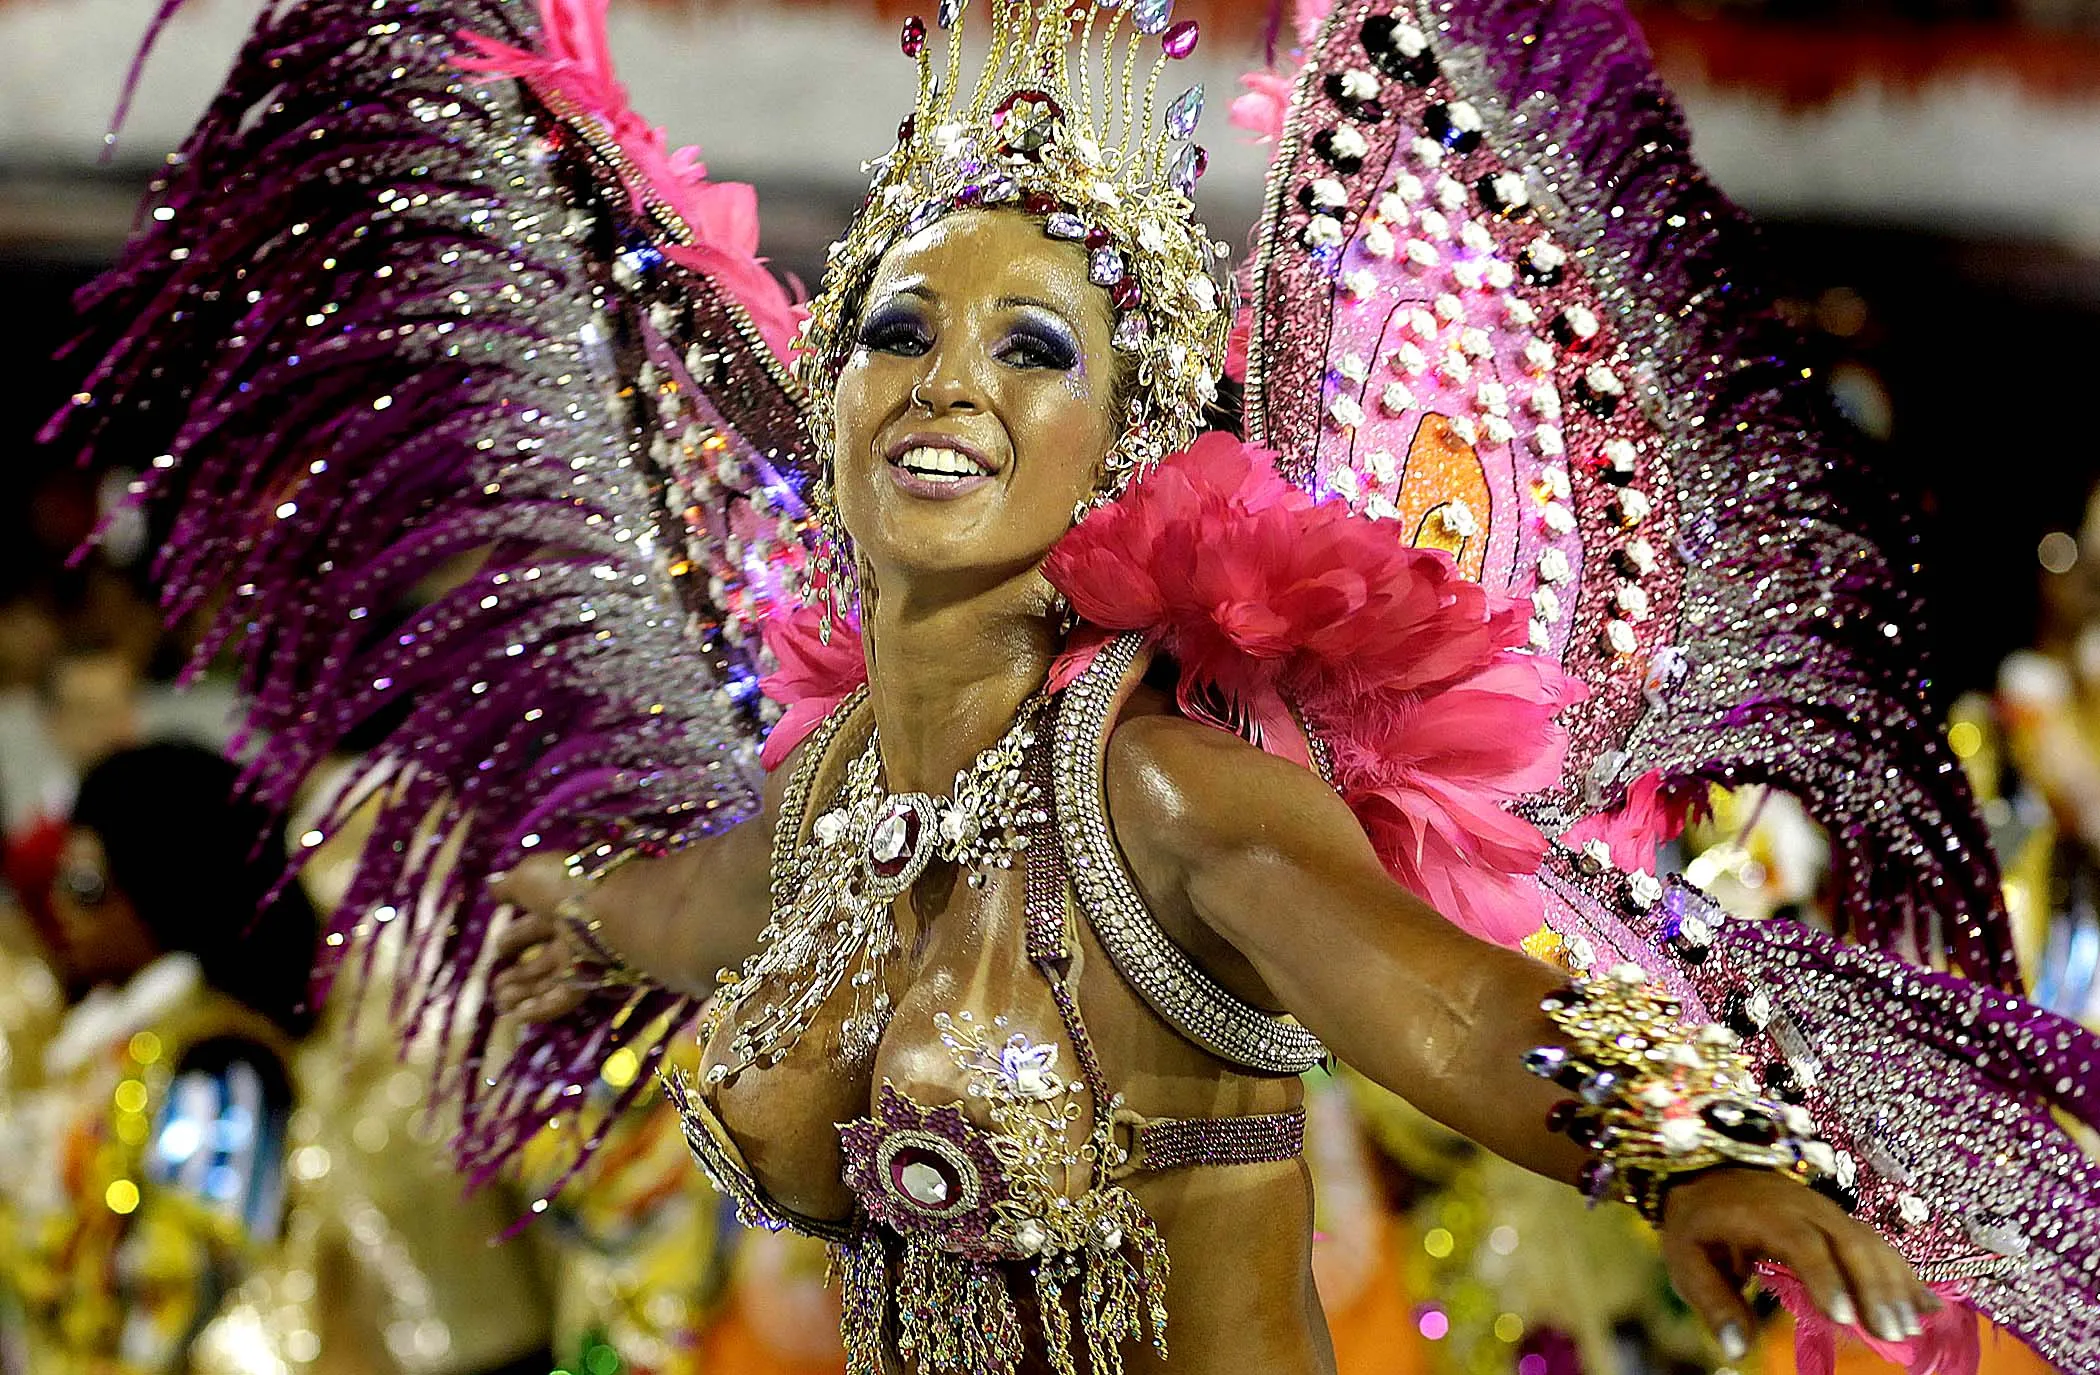 Carnival. Карнавал в Рио-де-Жанейро. Карнавал в Рио-де-Жанейро (бразильский карнавал). Карнавал в риодеженейро. Карнавал в Рио-де-Жанейро (бразильский карнавал) игрушки.